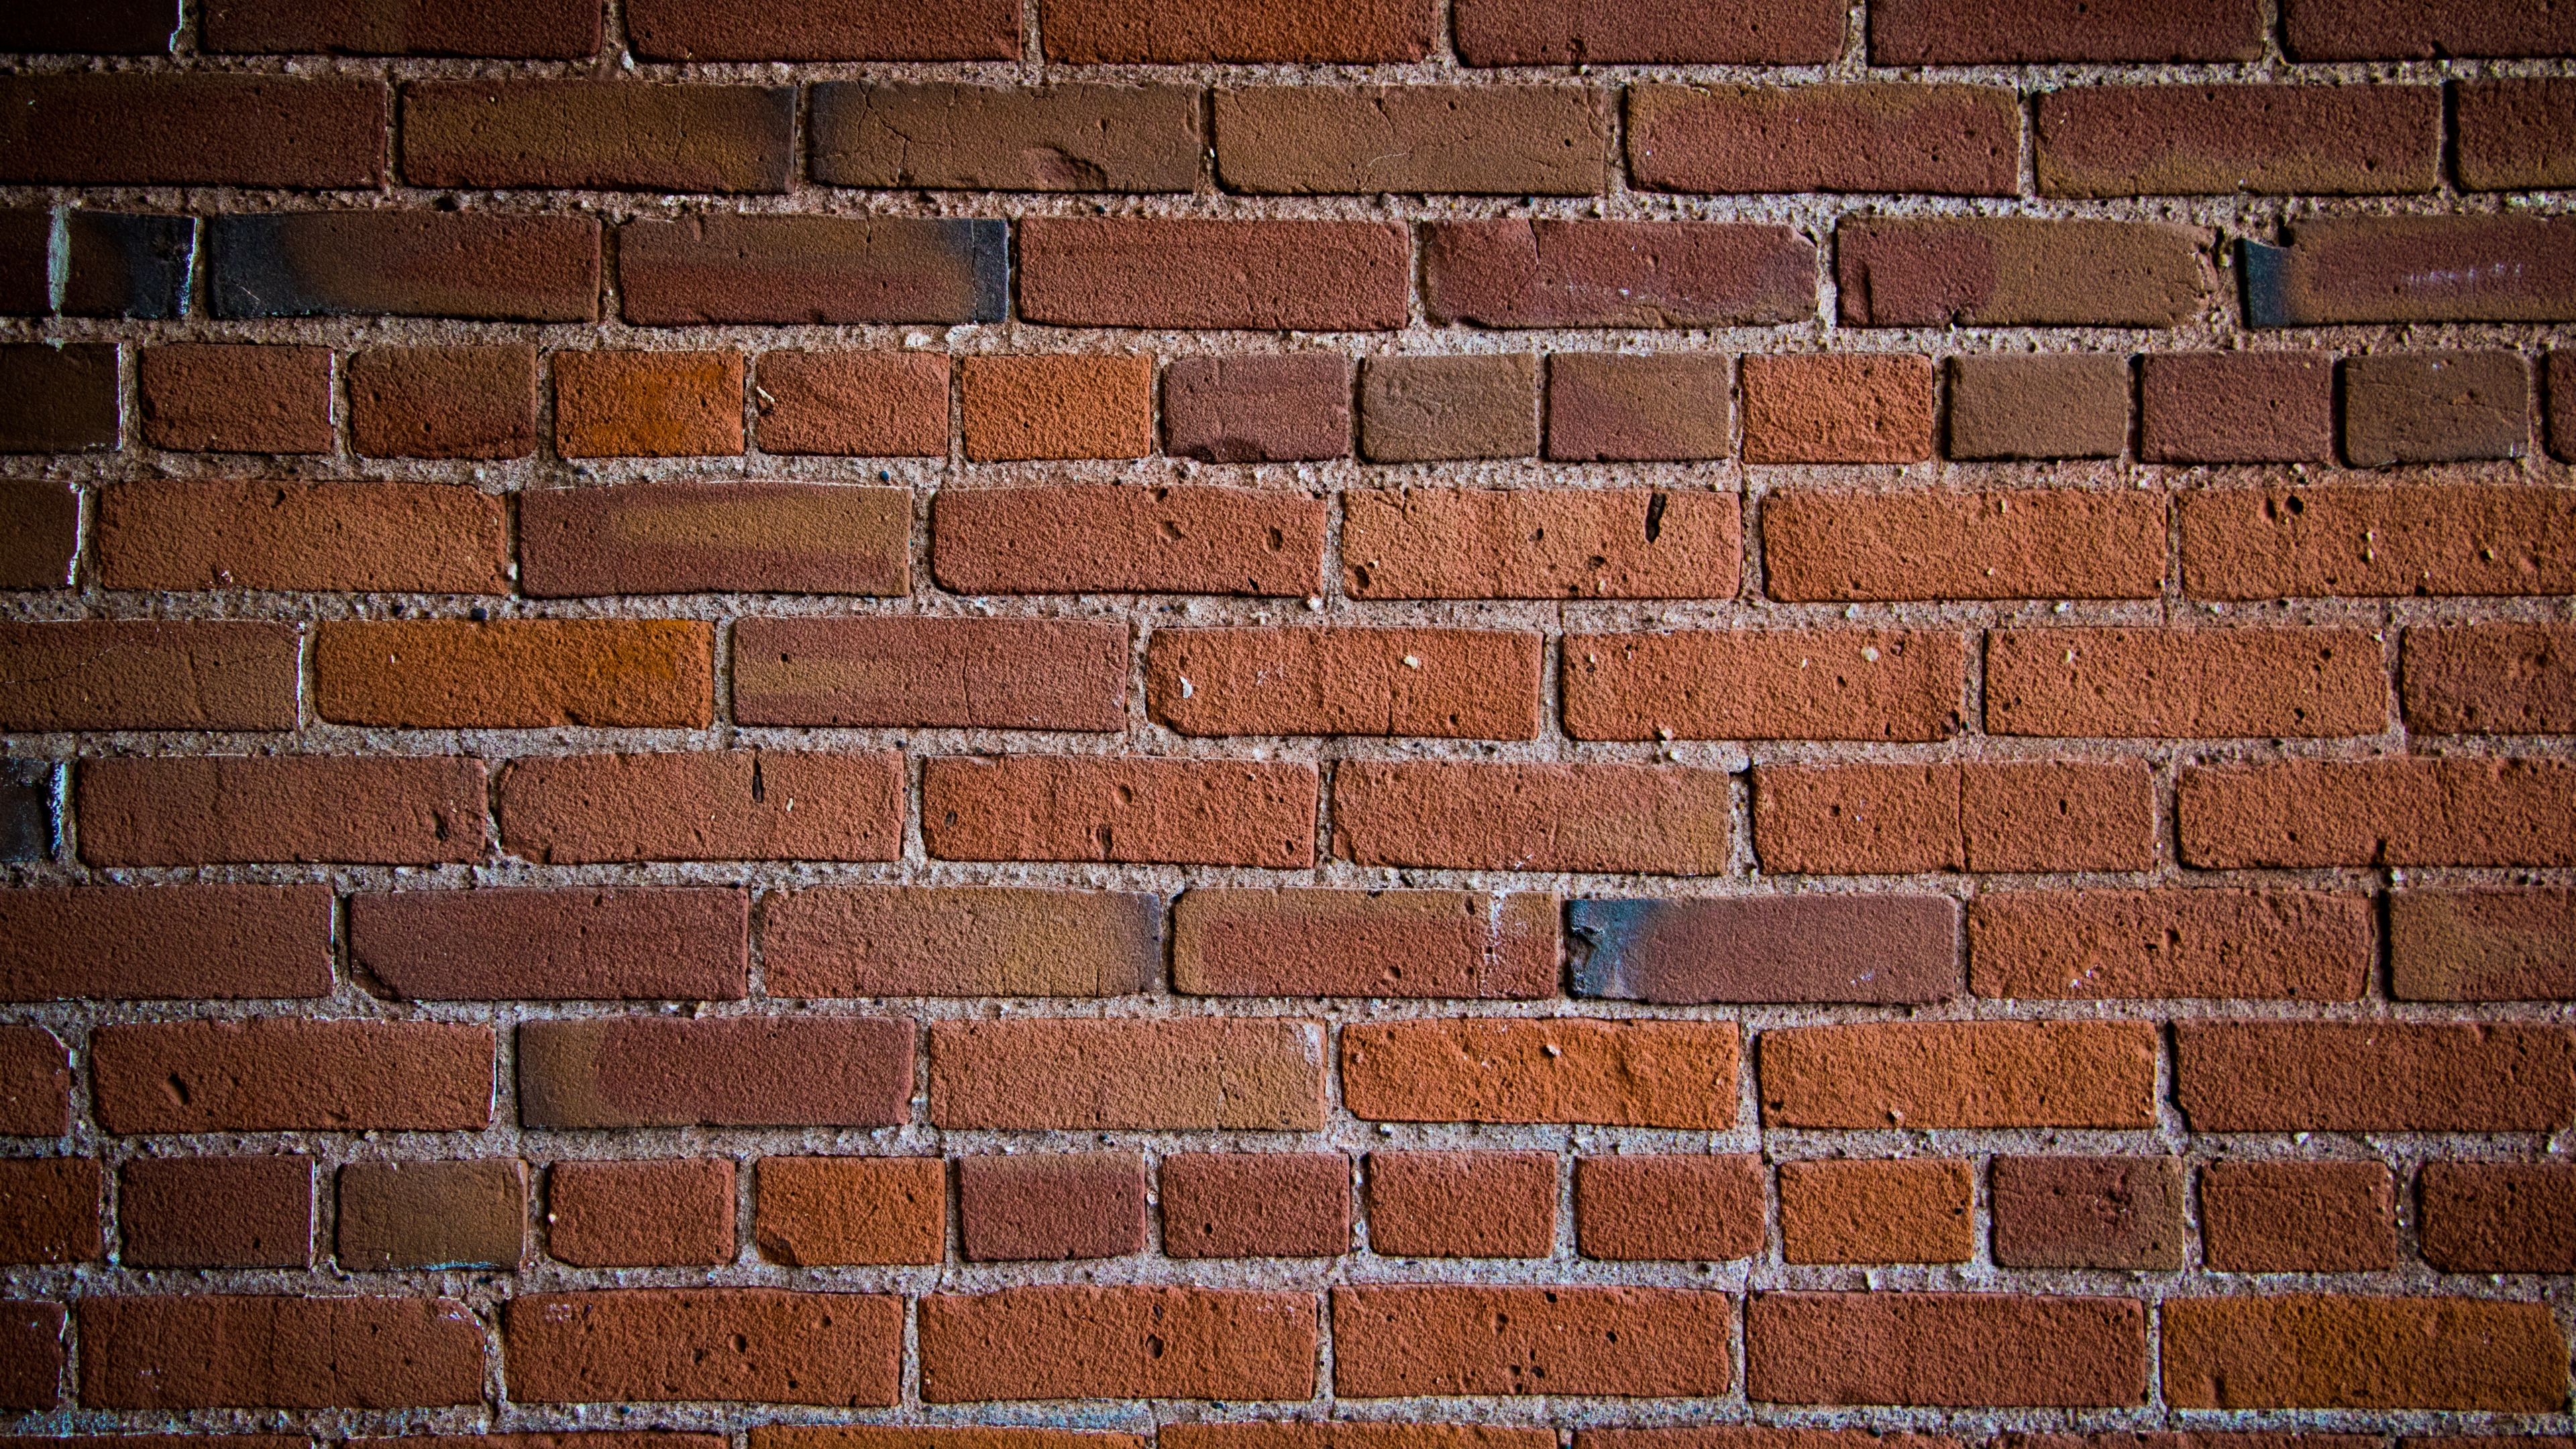 wall bricks texture 4k 1536097896 - wall, bricks, texture 4k - WALL, Texture, bricks